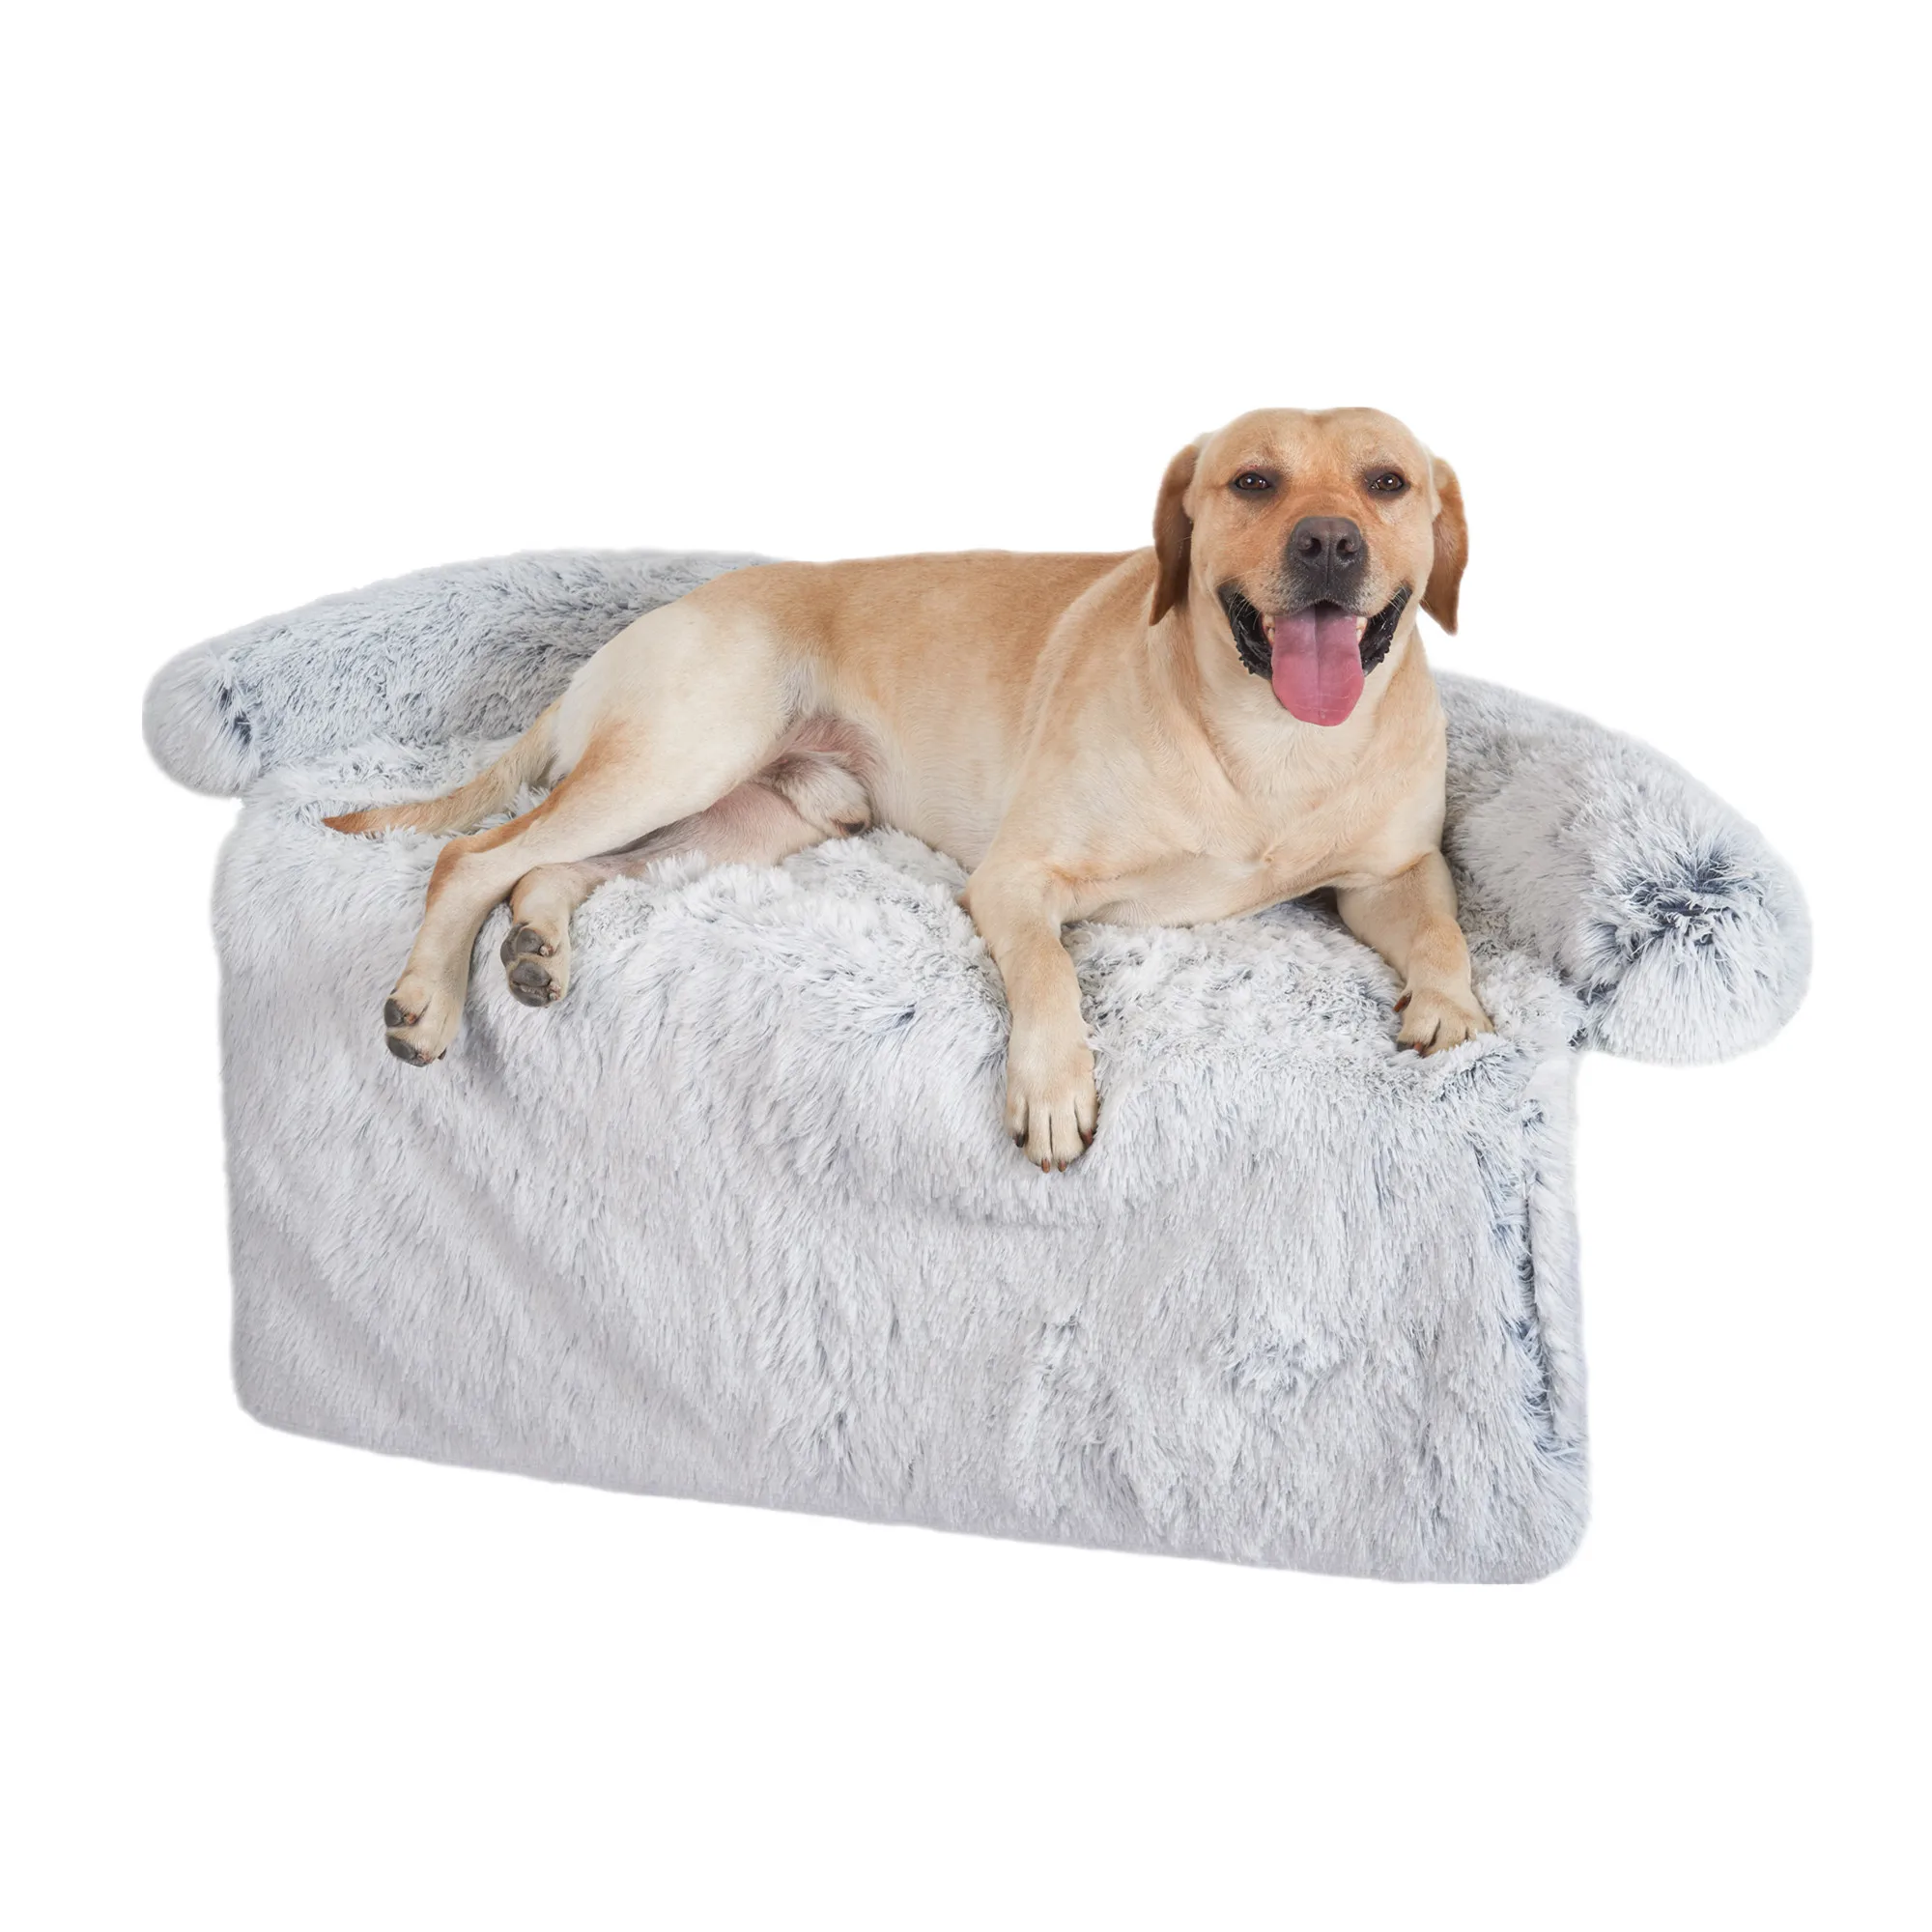 

Кровать для домашних животных VIP, диван для собаки, кровать для питомца, теплое гнездо, моющаяся мягкая защитная мебель, коврик, одеяло для ко...